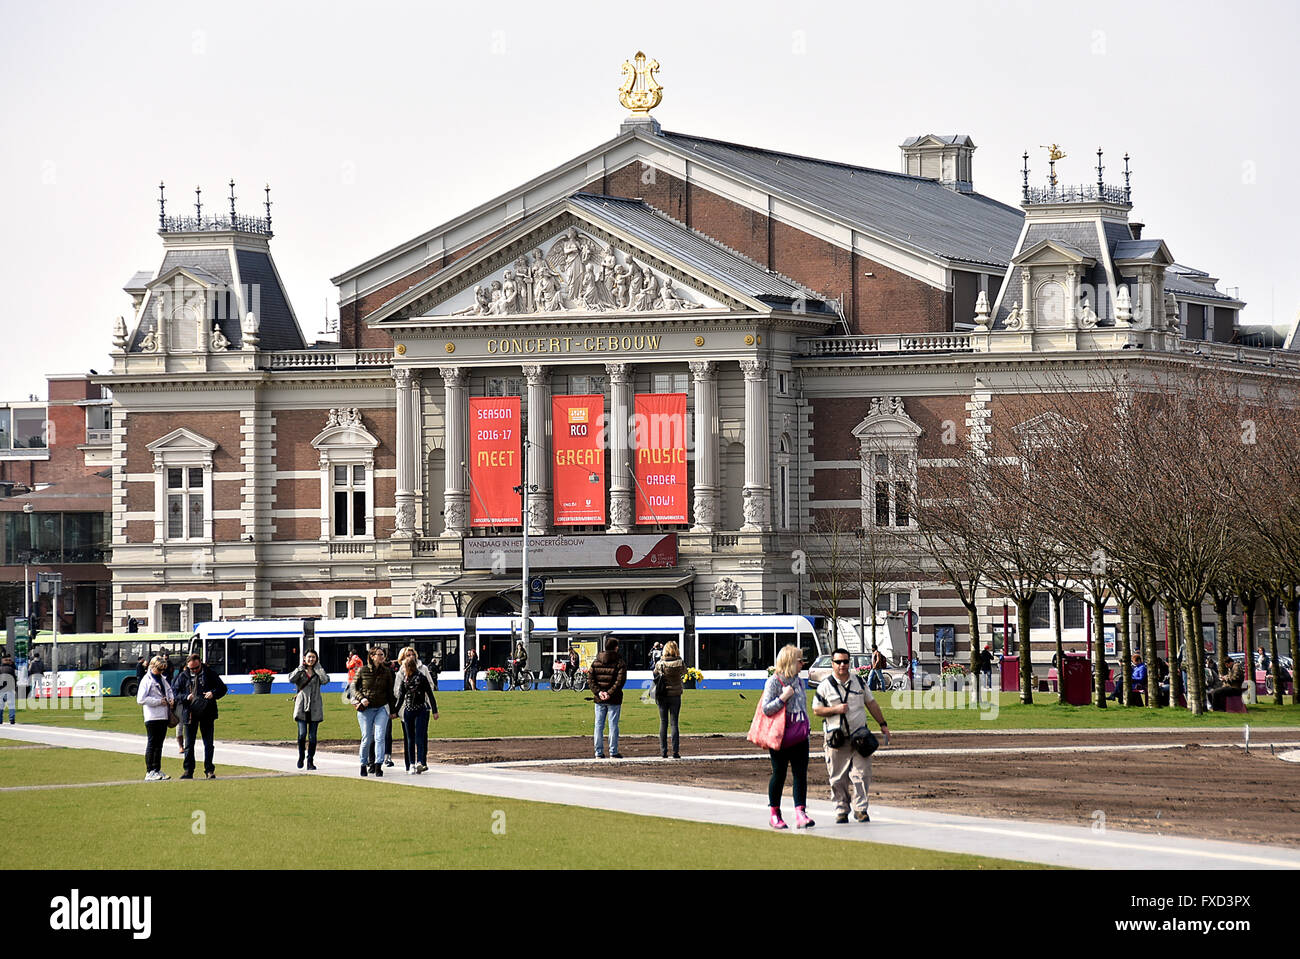 Concertgebouw - Concertgebouwplein - Museumplein Amsterdam Niederlande Niederländisch Stockfoto